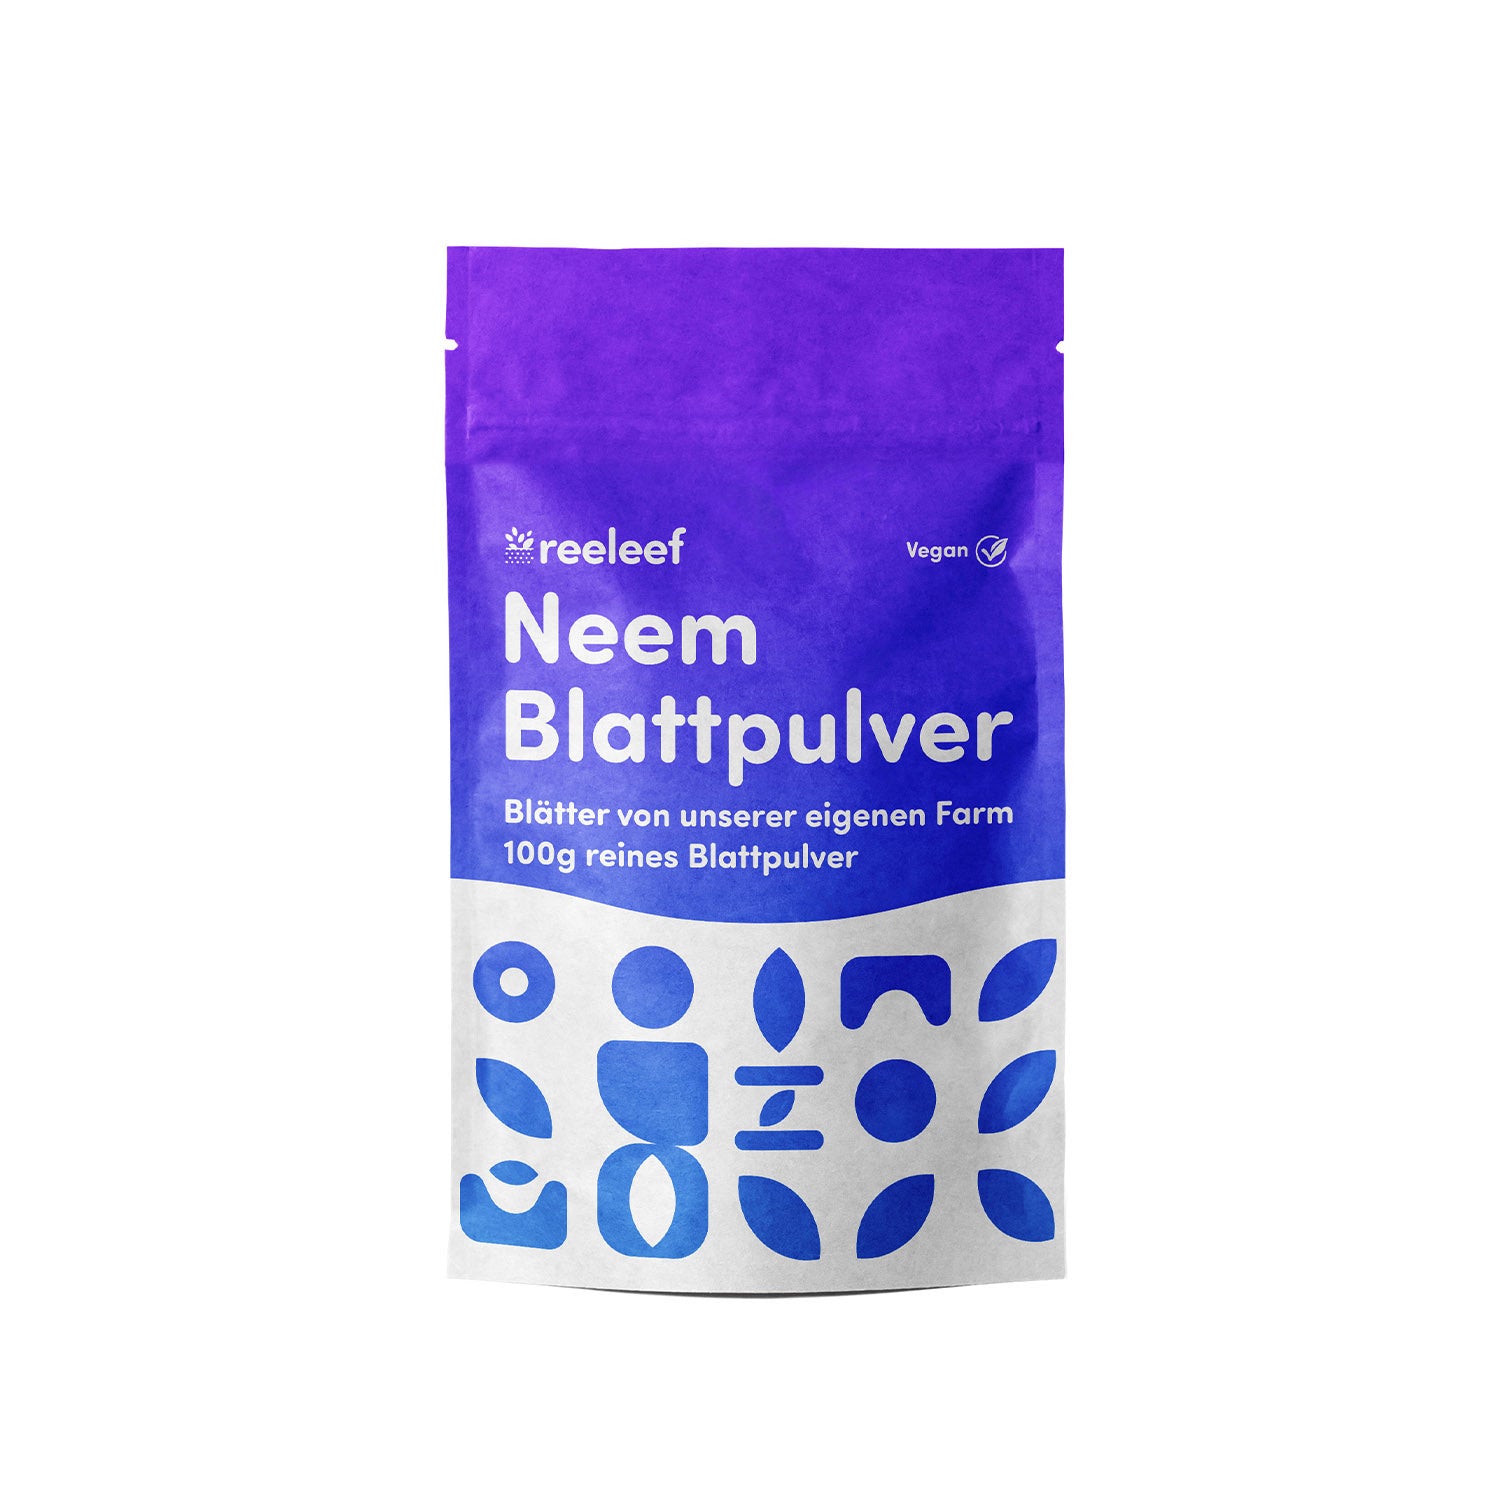 Zu sehen ist die Verpackung und Beschriftung unseres Produkts, dem Neem Pulver in 100gr, in einem elektrischem blau und lila.